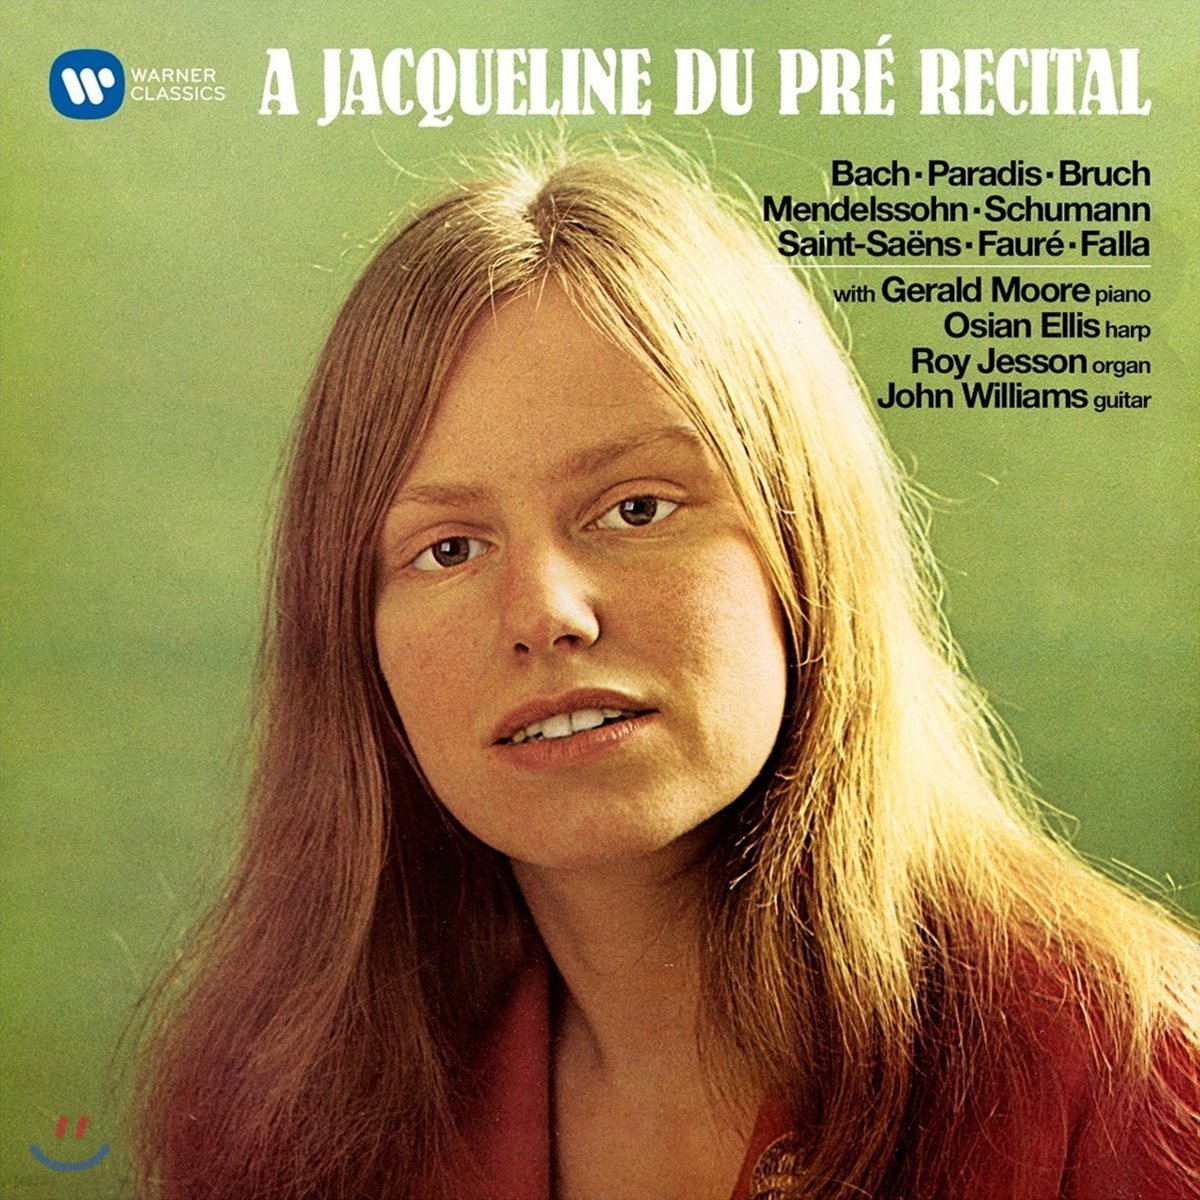 Jacqueline du Pre 재클린 뒤 프레 리사이틀 - 바흐 / 브루흐 / 멘델스존 / 슈만 외 (A Jacqueline du Pre Recital - Bach / Bruch / Mendelssohn / Schumann)